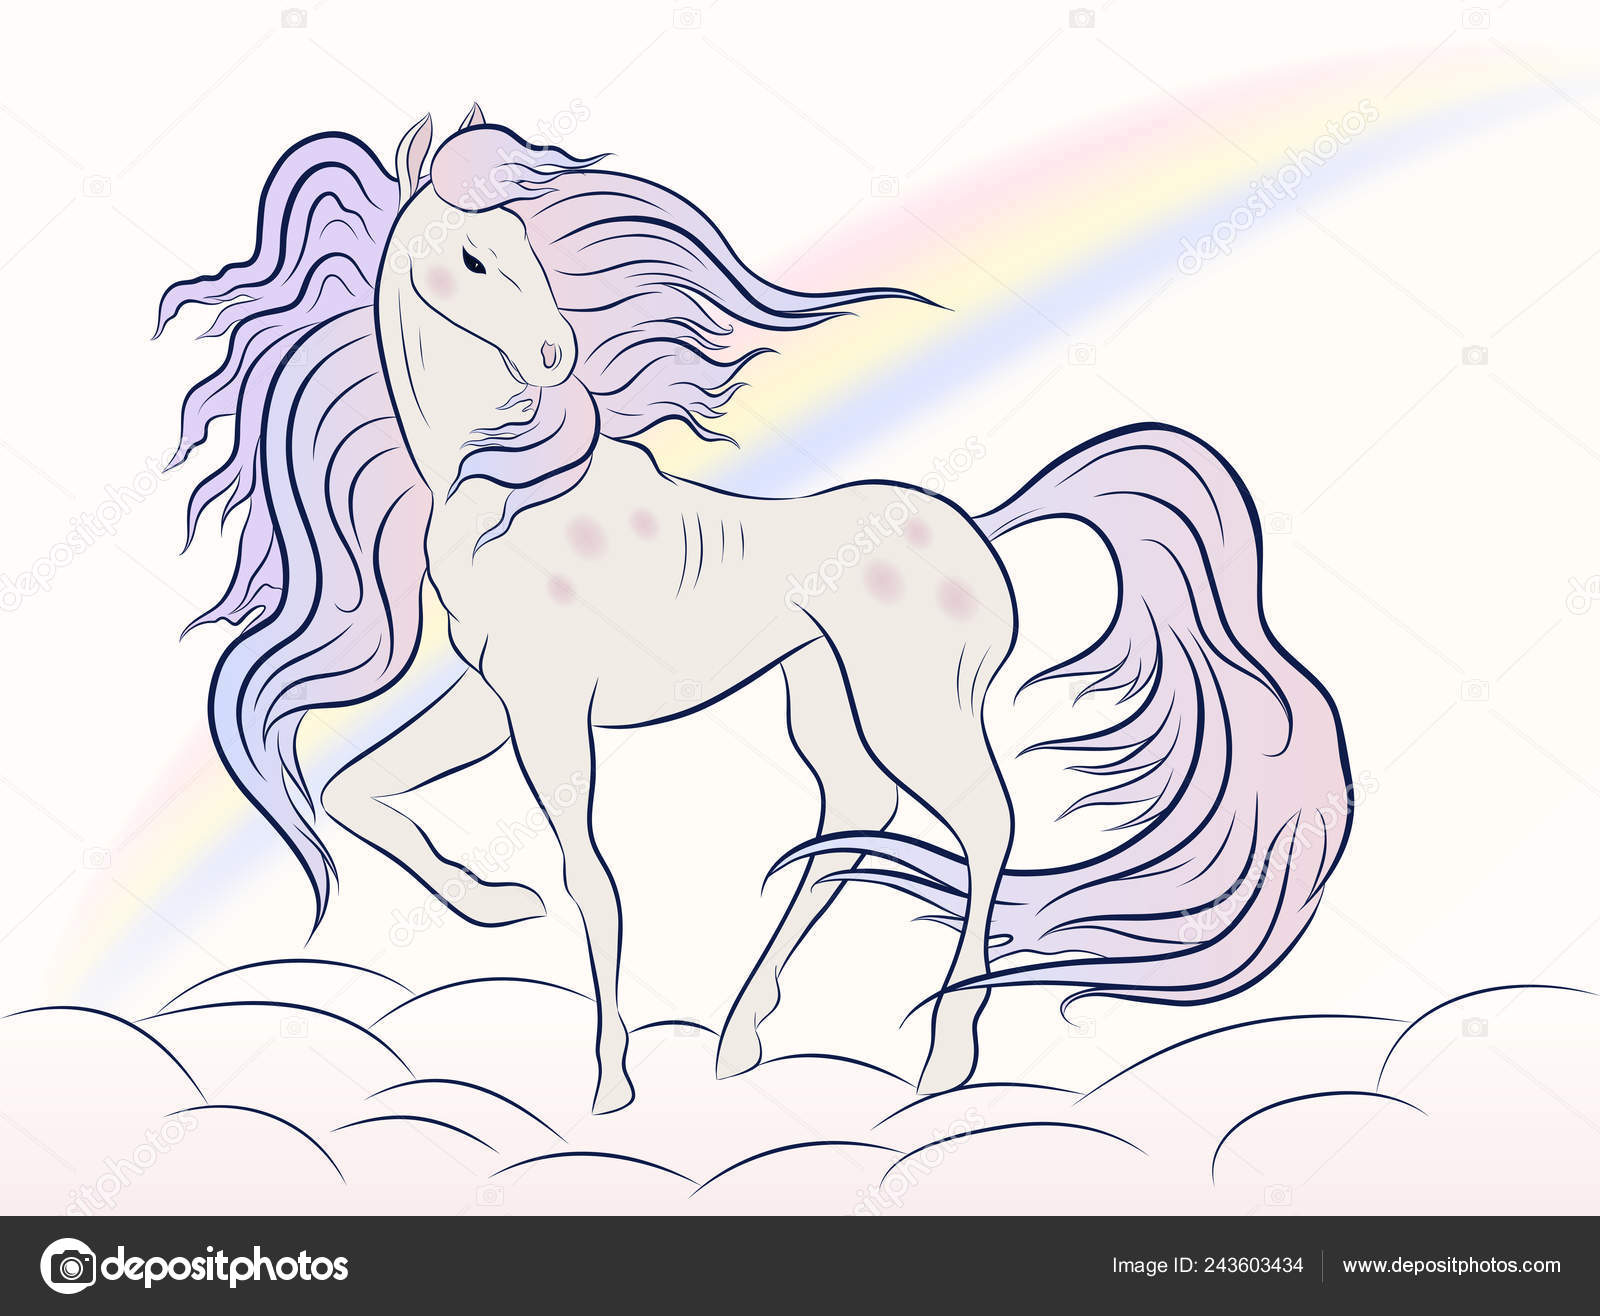 Конь с розовой гривой распечатать. Конь с розовой гривой рисунок. Иллюстрация к произведению конь с розовой гривой. Конь с розовой гривой раскраска. Конь с розовой гривой нарисовать.